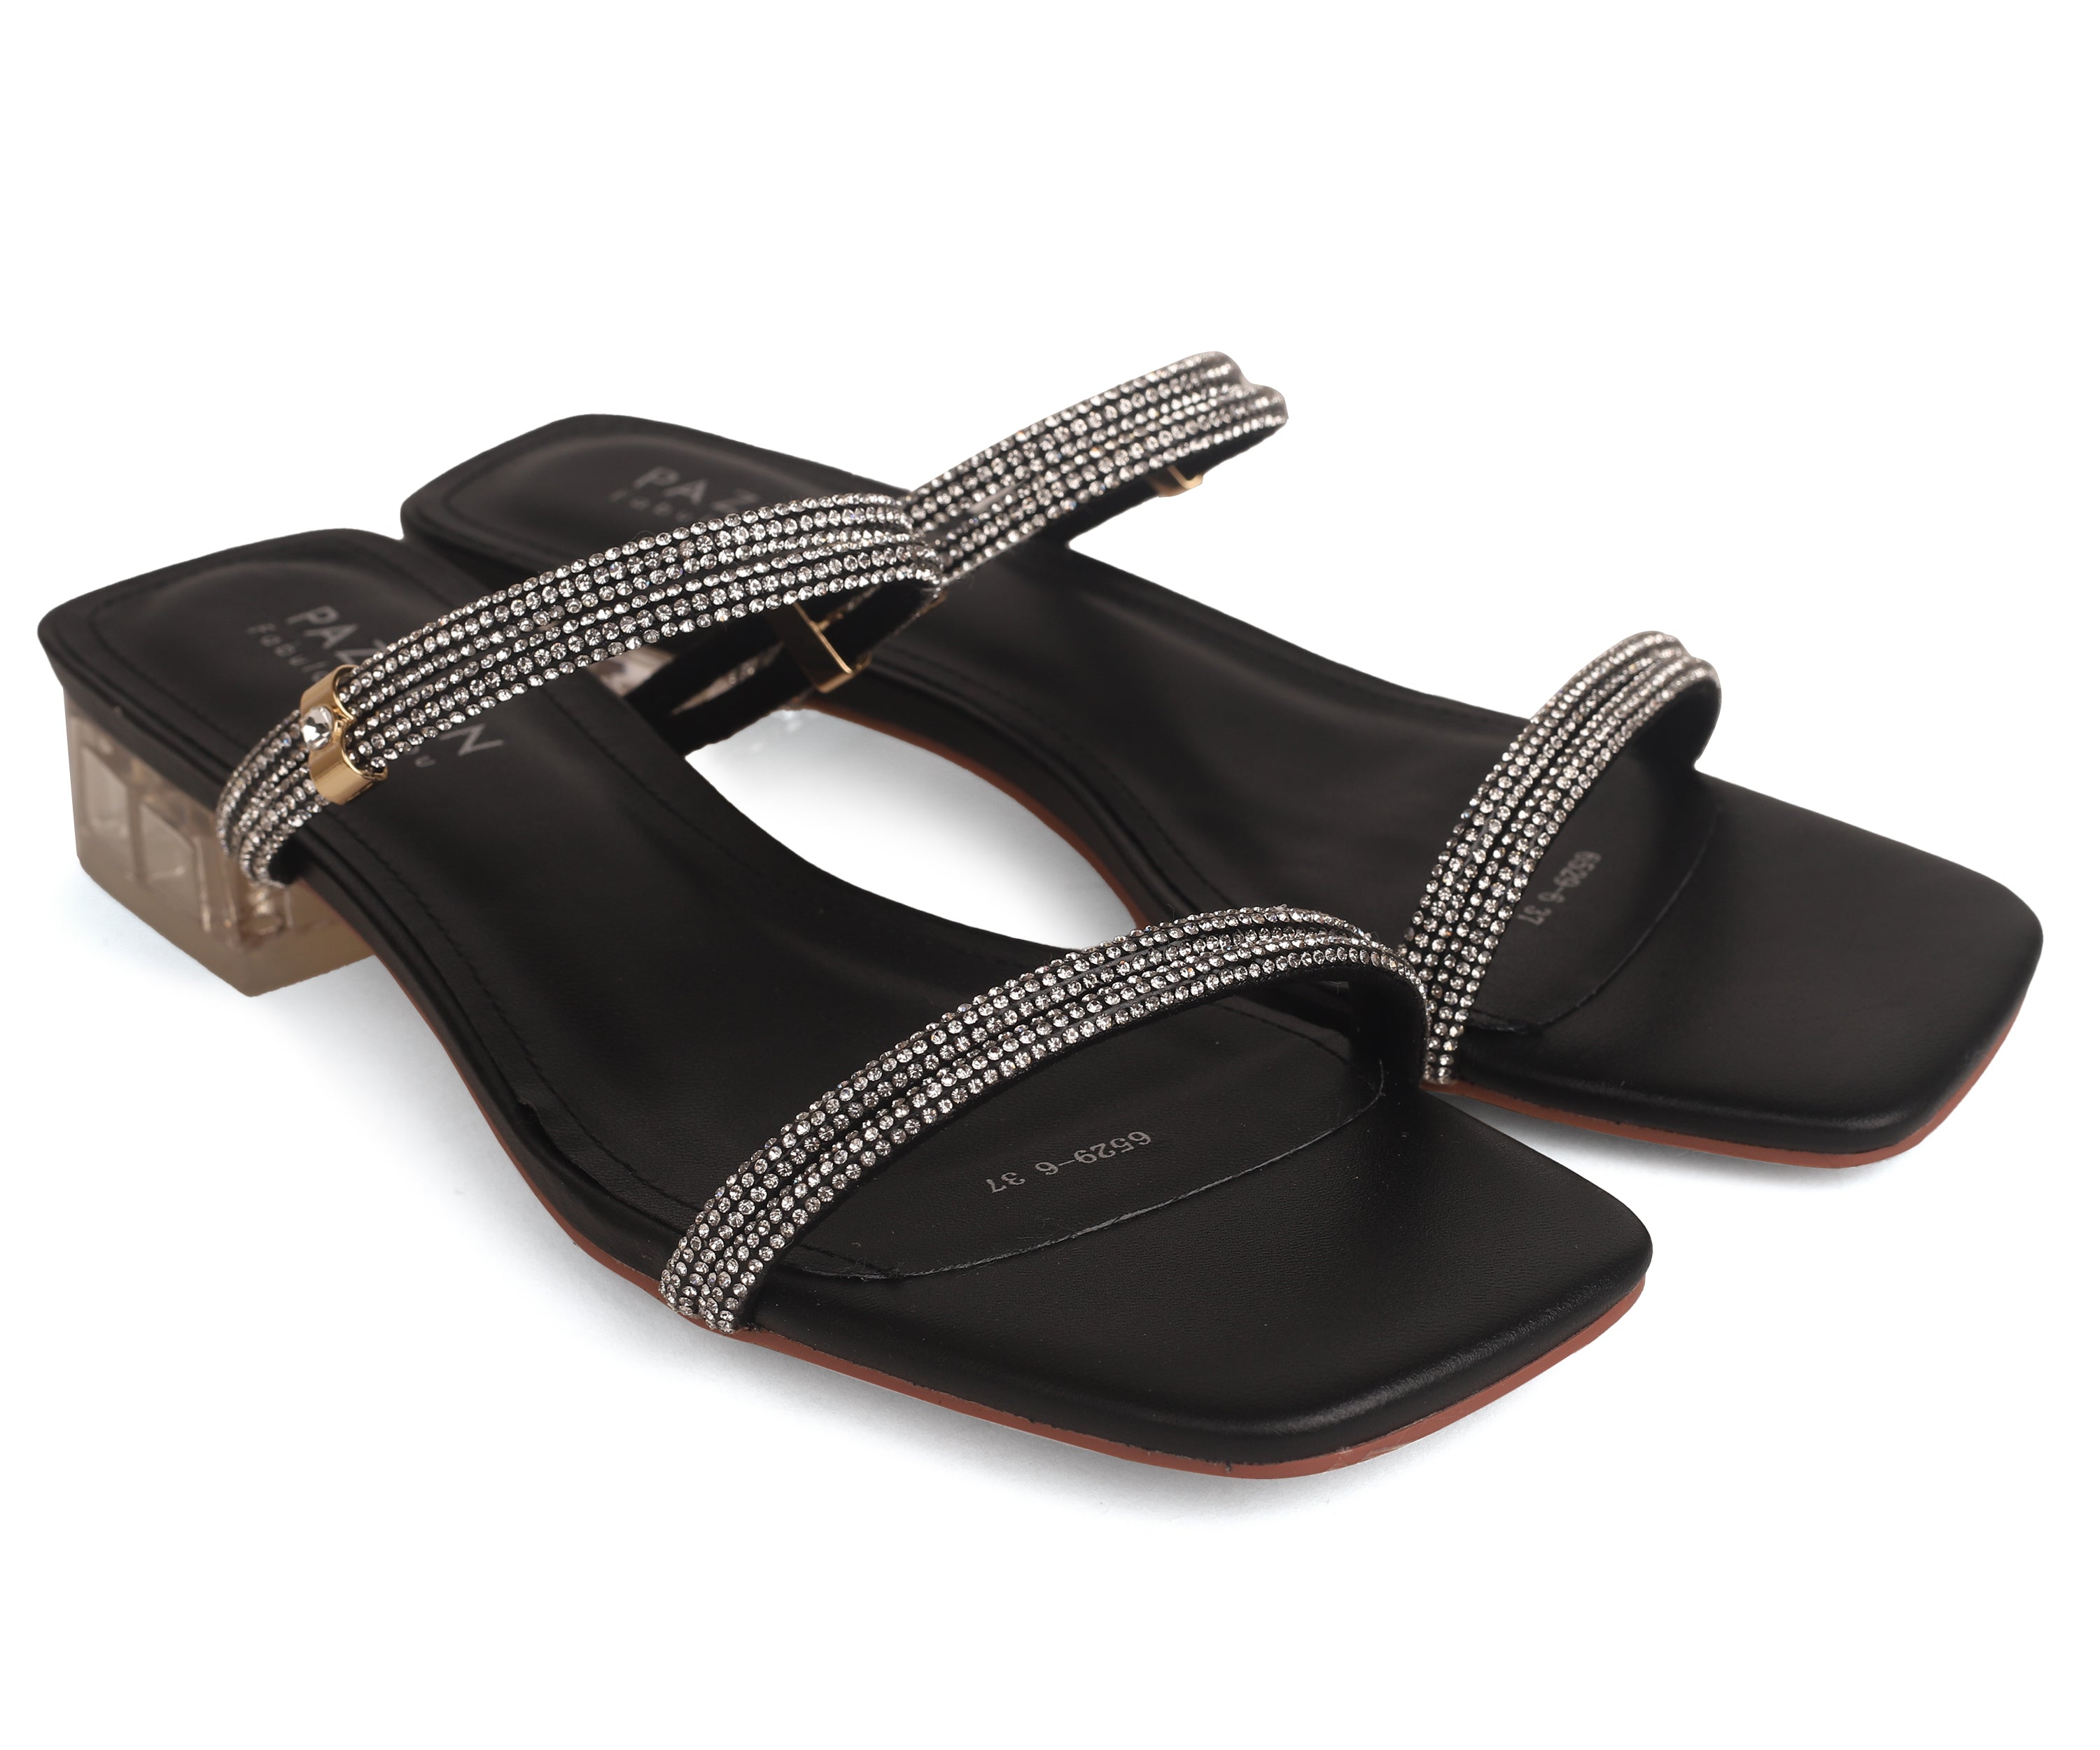 6529-6 Embellished Strappy Open Toe Sandals- Black